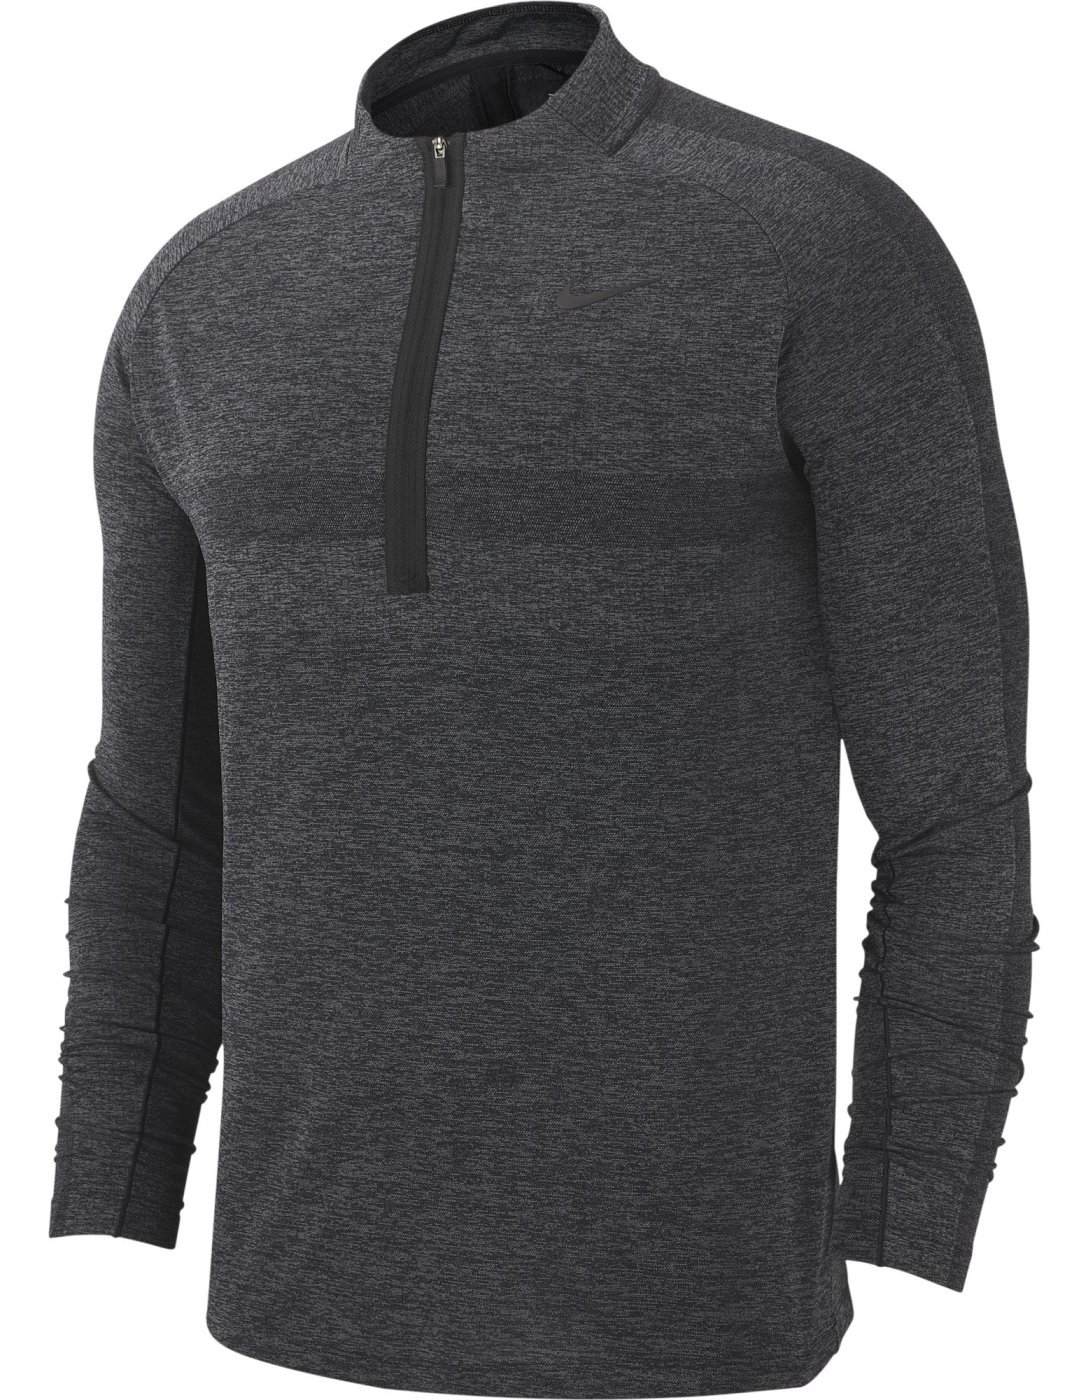 Felpa con cappuccio/Maglione Nike Dry Knit Statement 1/2 Zip Mens Sweater Black/Dark Grey S